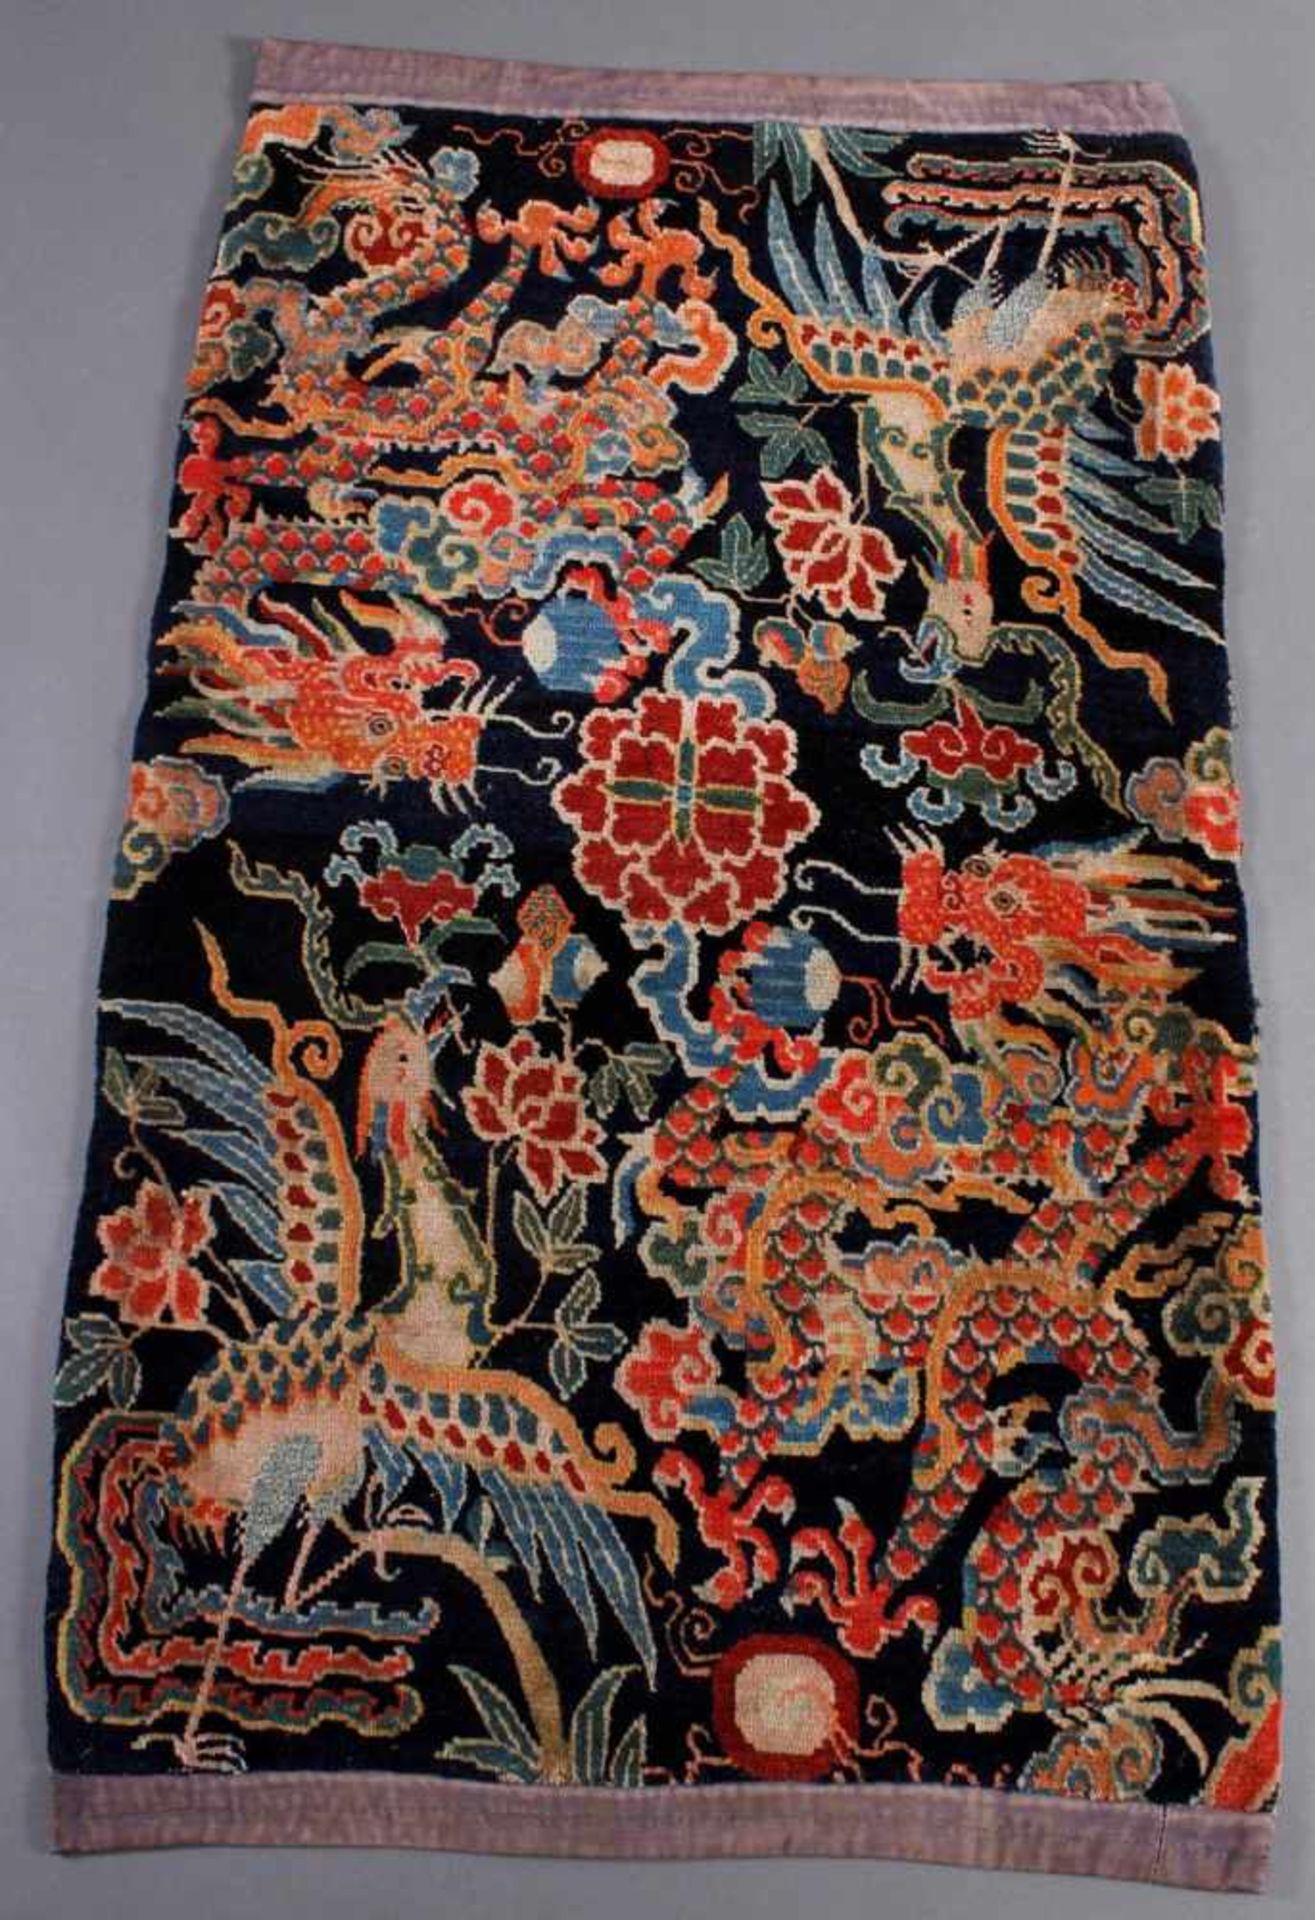 Antiker Säulenteppich mit Drachen und Phönix Motiv, China 19. Jh.Doppeltes Drachen-Phönix Motiv